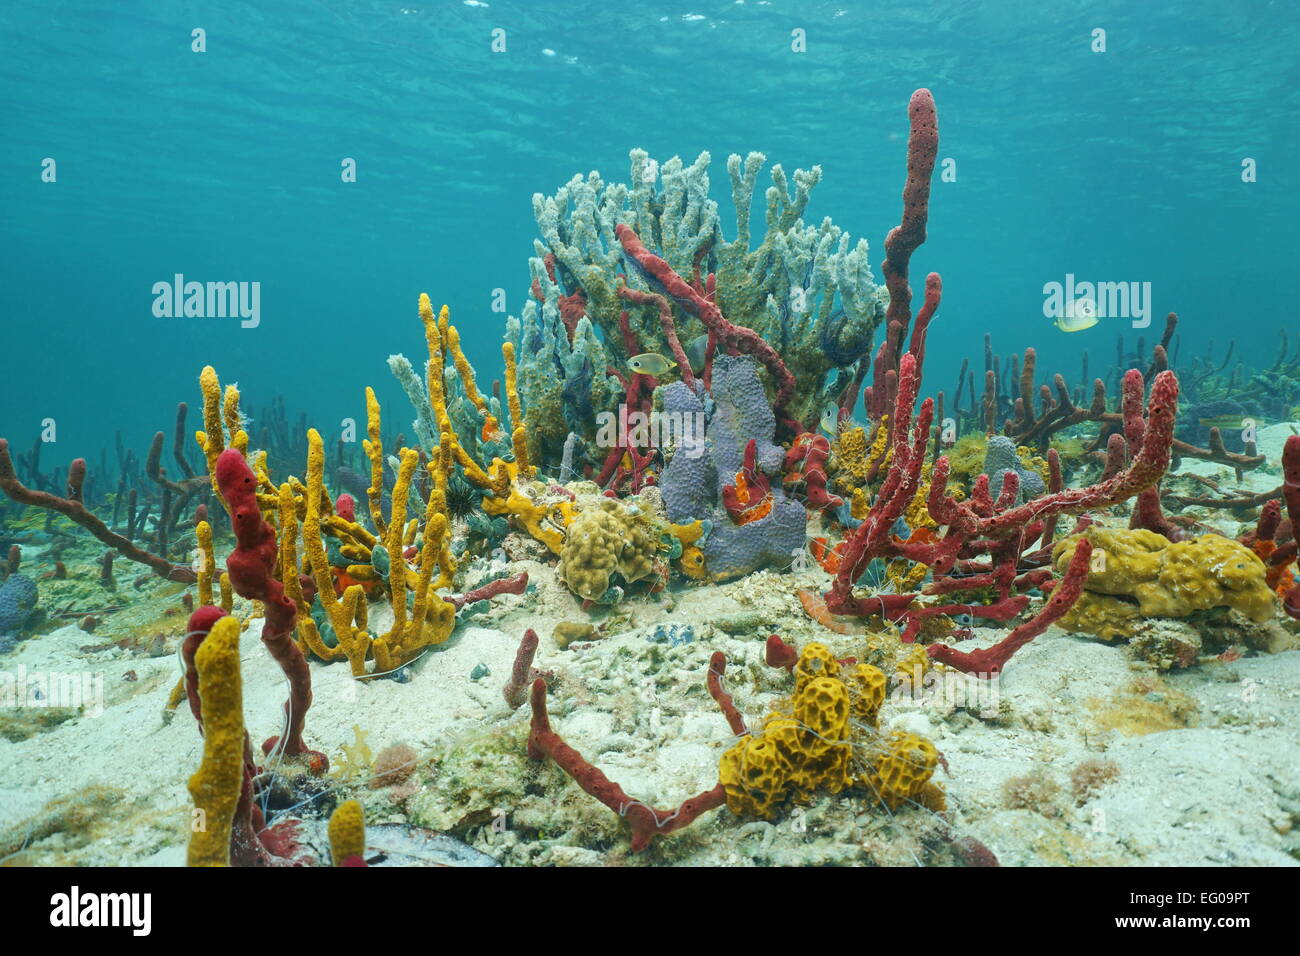 La vie sous-marine animée avec des éponges de mer dans un récif de corail des Caraïbes, Amérique centrale, Panama Banque D'Images